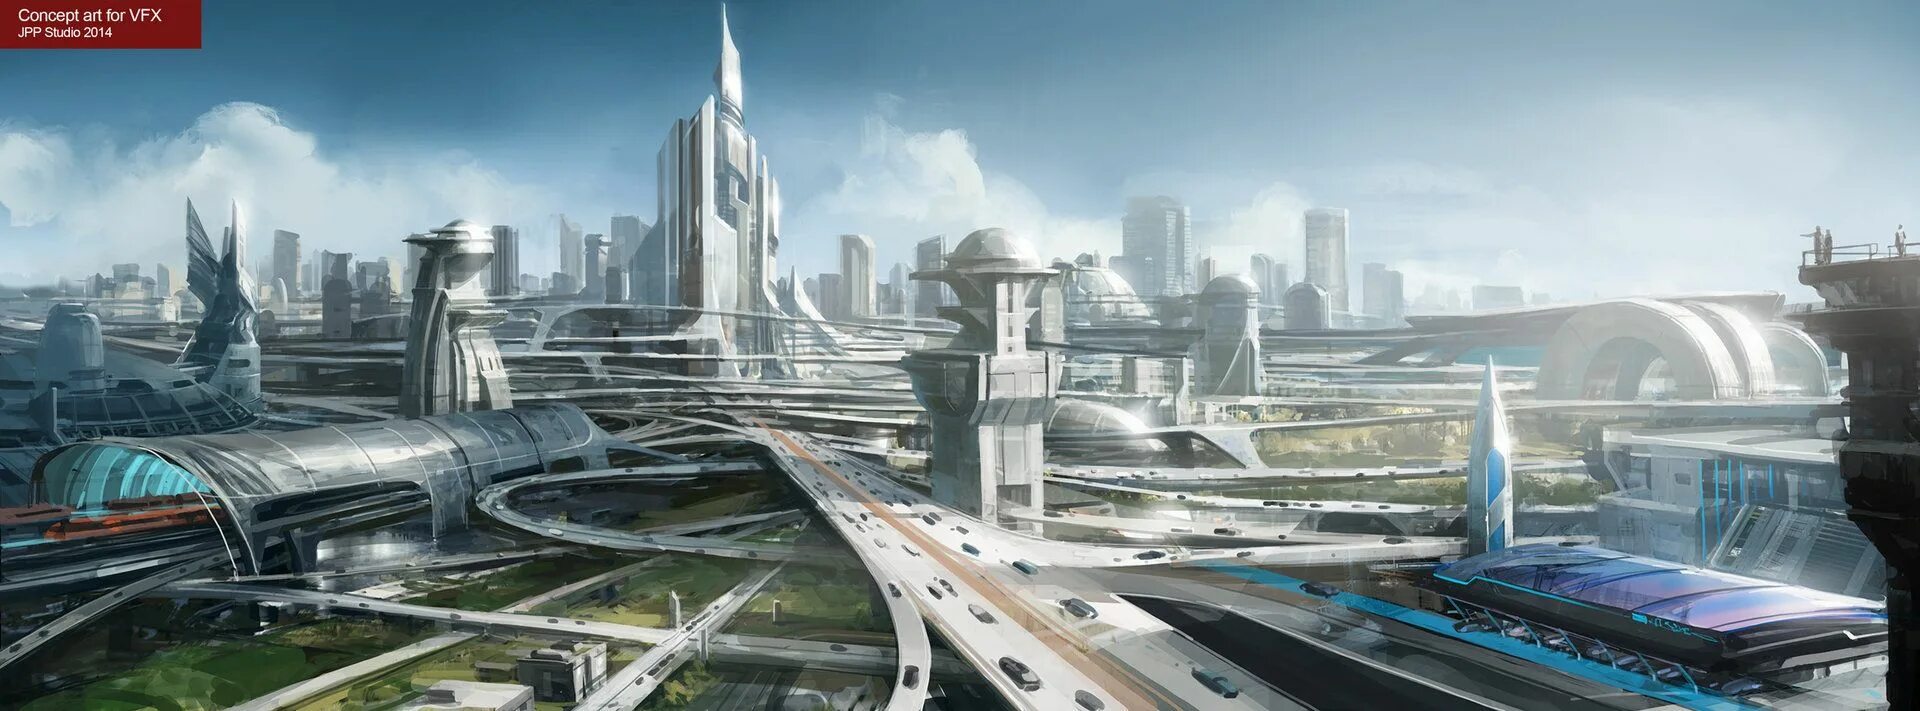 Стоит будущее. Панорама будущего. Развитый город будущего. Фантастика. Город будущего панорама.